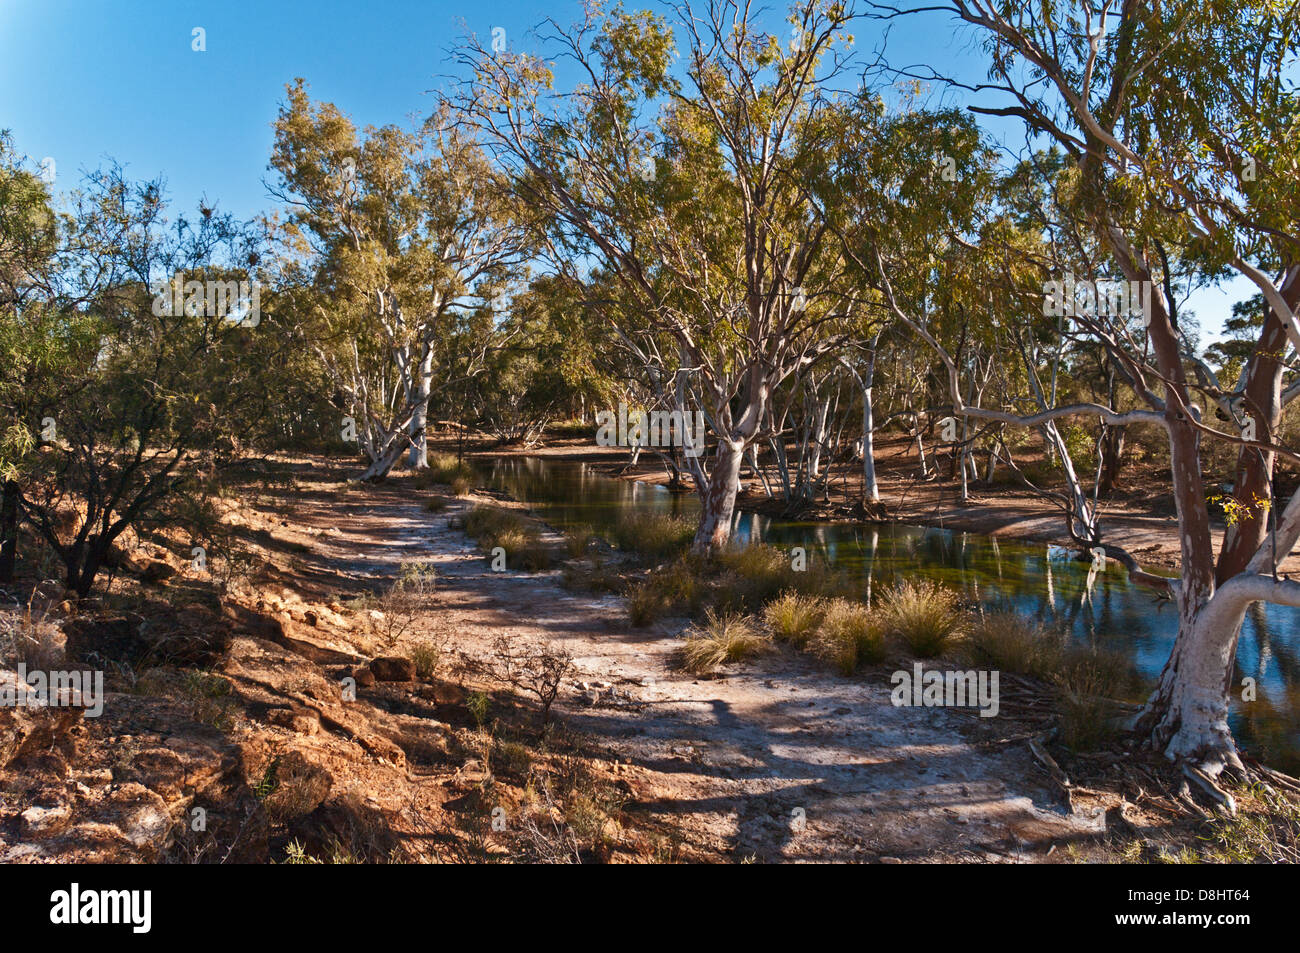 WINDICH SPRINGS, l'eau N° 4a, CANNING STOCK ROUTE, grand désert de sable, de l'Australie-Occidentale, Australie Banque D'Images